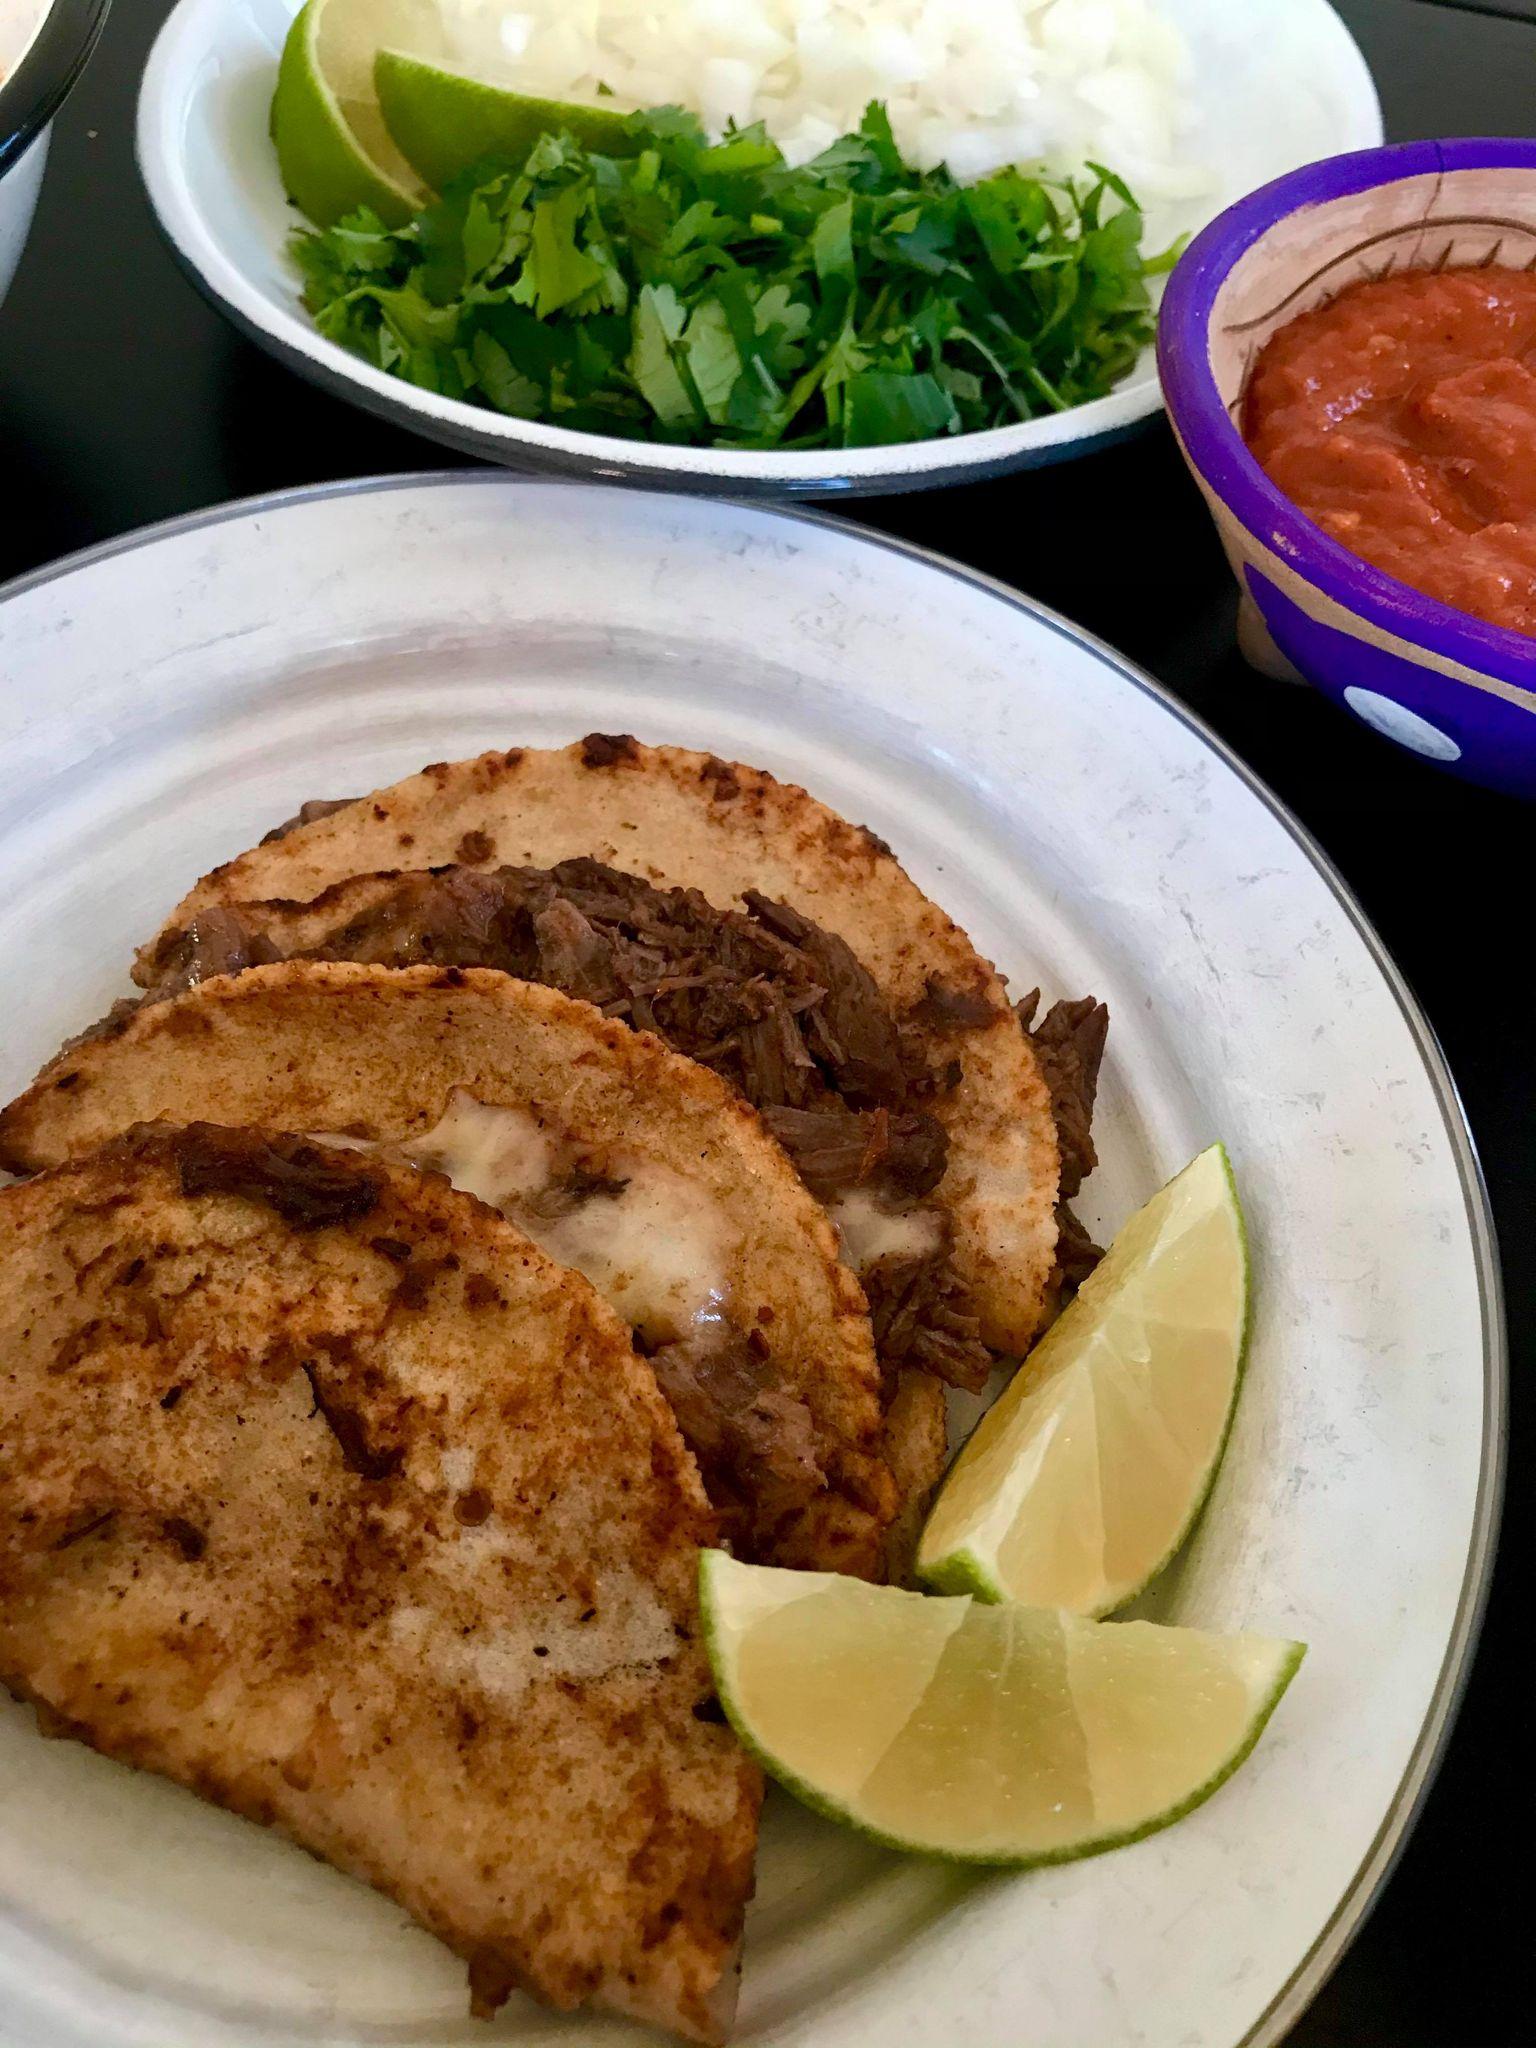 Quesotacos med consommé ved siden av der man dipper tacos i kraft: Hell litt olje i en varm panne på middels høy varme. Ta kjøtt ut av kraften, og legg det i en bolle. Du skal dyppe tortillaen først i sausen. Deretter lager du en taco med både ost og kjøtt. Pass på å legge ost først på tortillaen og så på kjøttet. Brett sammen og legg tacoen i stekepannen. Det beste å bruke er queso Oaxaca. Hvis du ikke finner den, kan du bruke en vanlig gulost som smelter bra. La osten smelte, og snu tacoen. Hell på ekstra saus og la den steke til sausen fordamper.  Fyll tacoen med garnityr, og server med consommé som du kan dyppe i.  